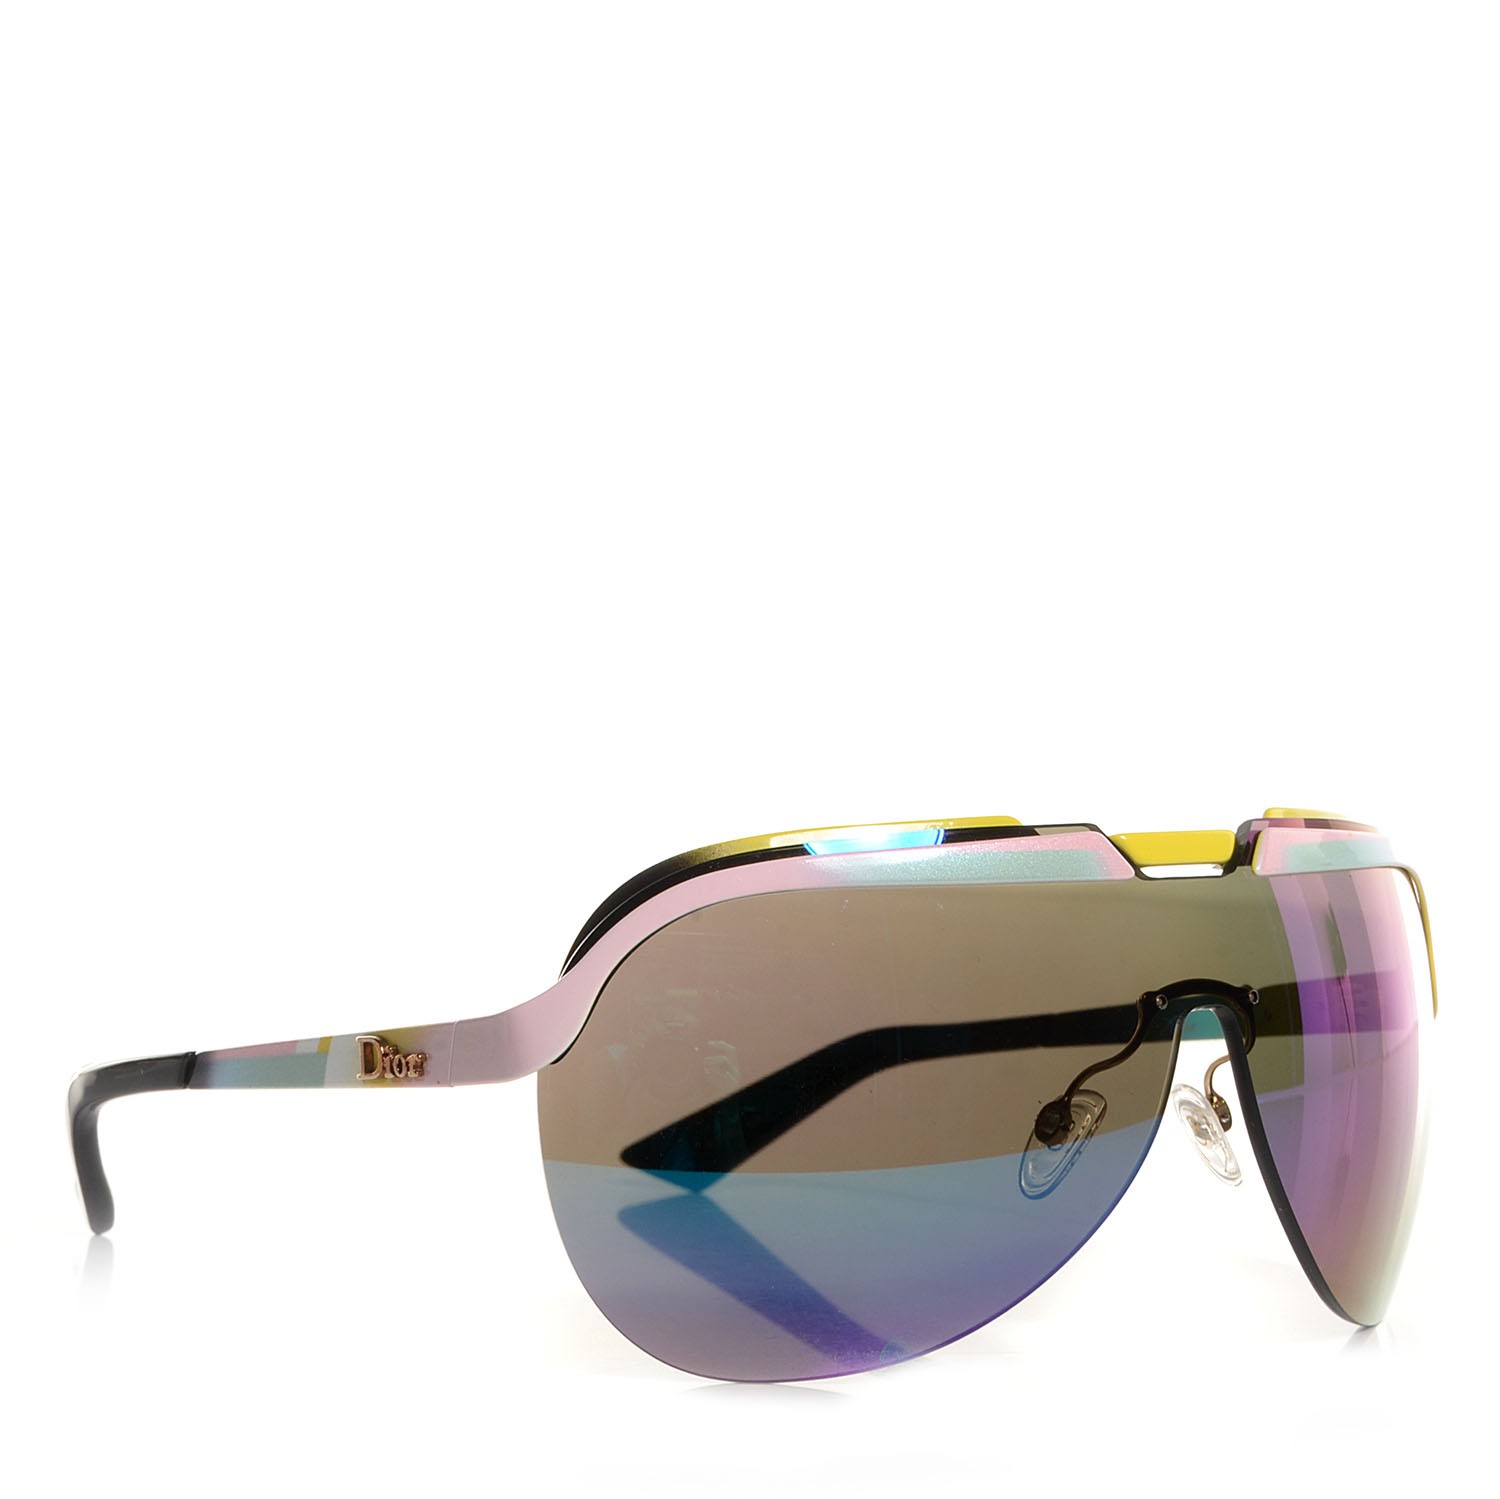 dior solar shield sunglasses